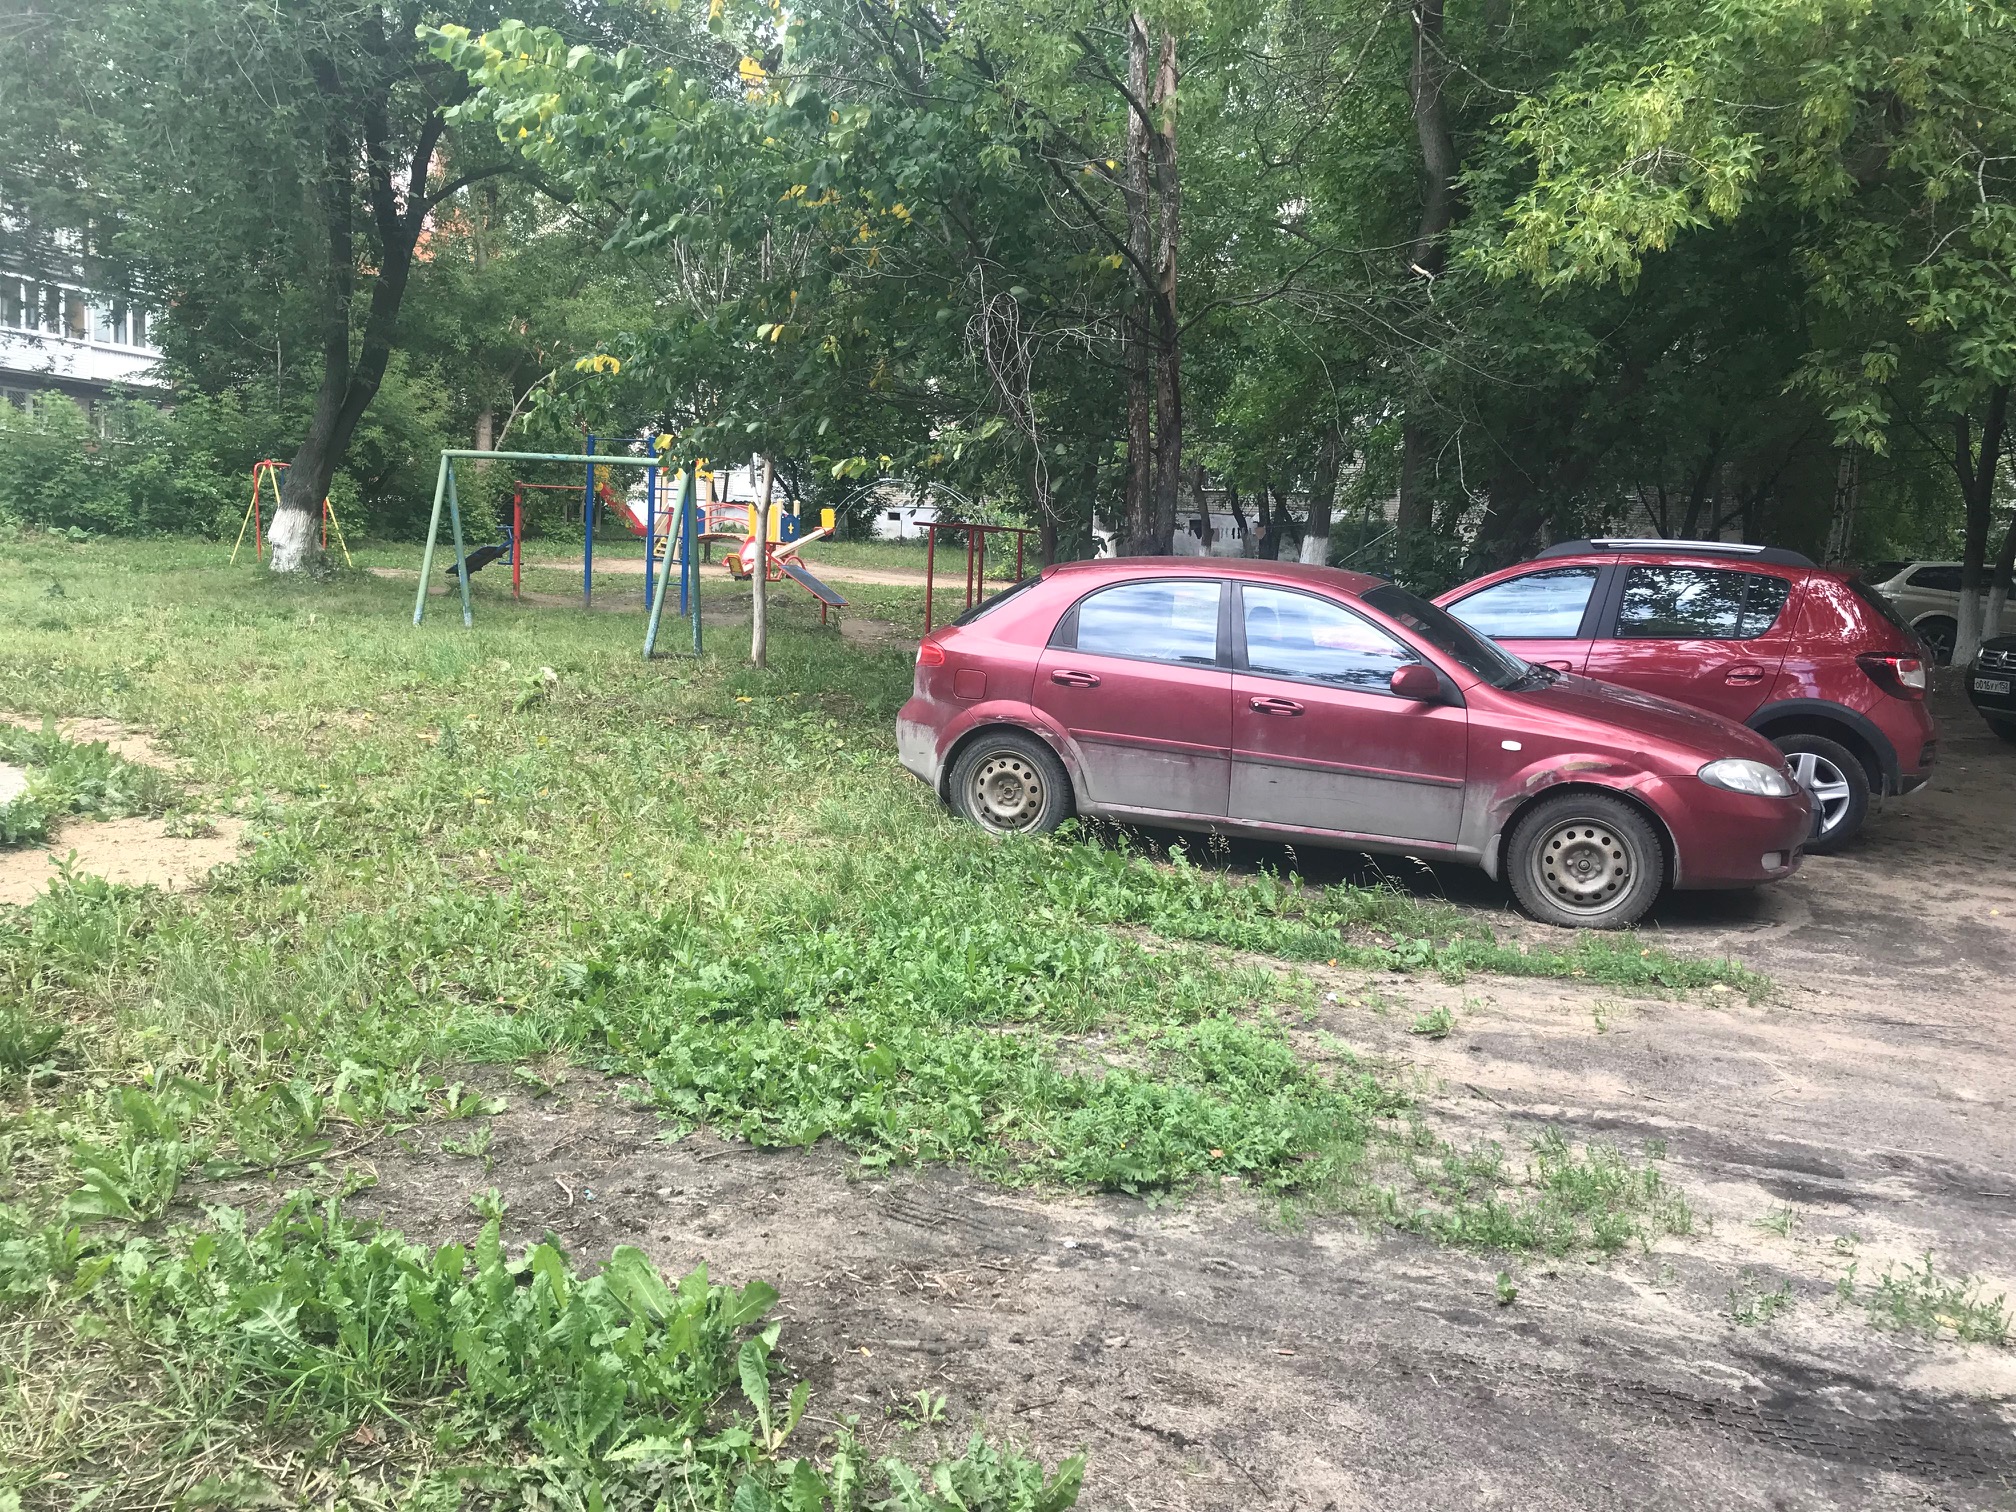 25 протоколов за парковку на газонах составили инспекторы АТИ в ходе рейда на улице Сурикова в Нижнем Новгороде - фото 2